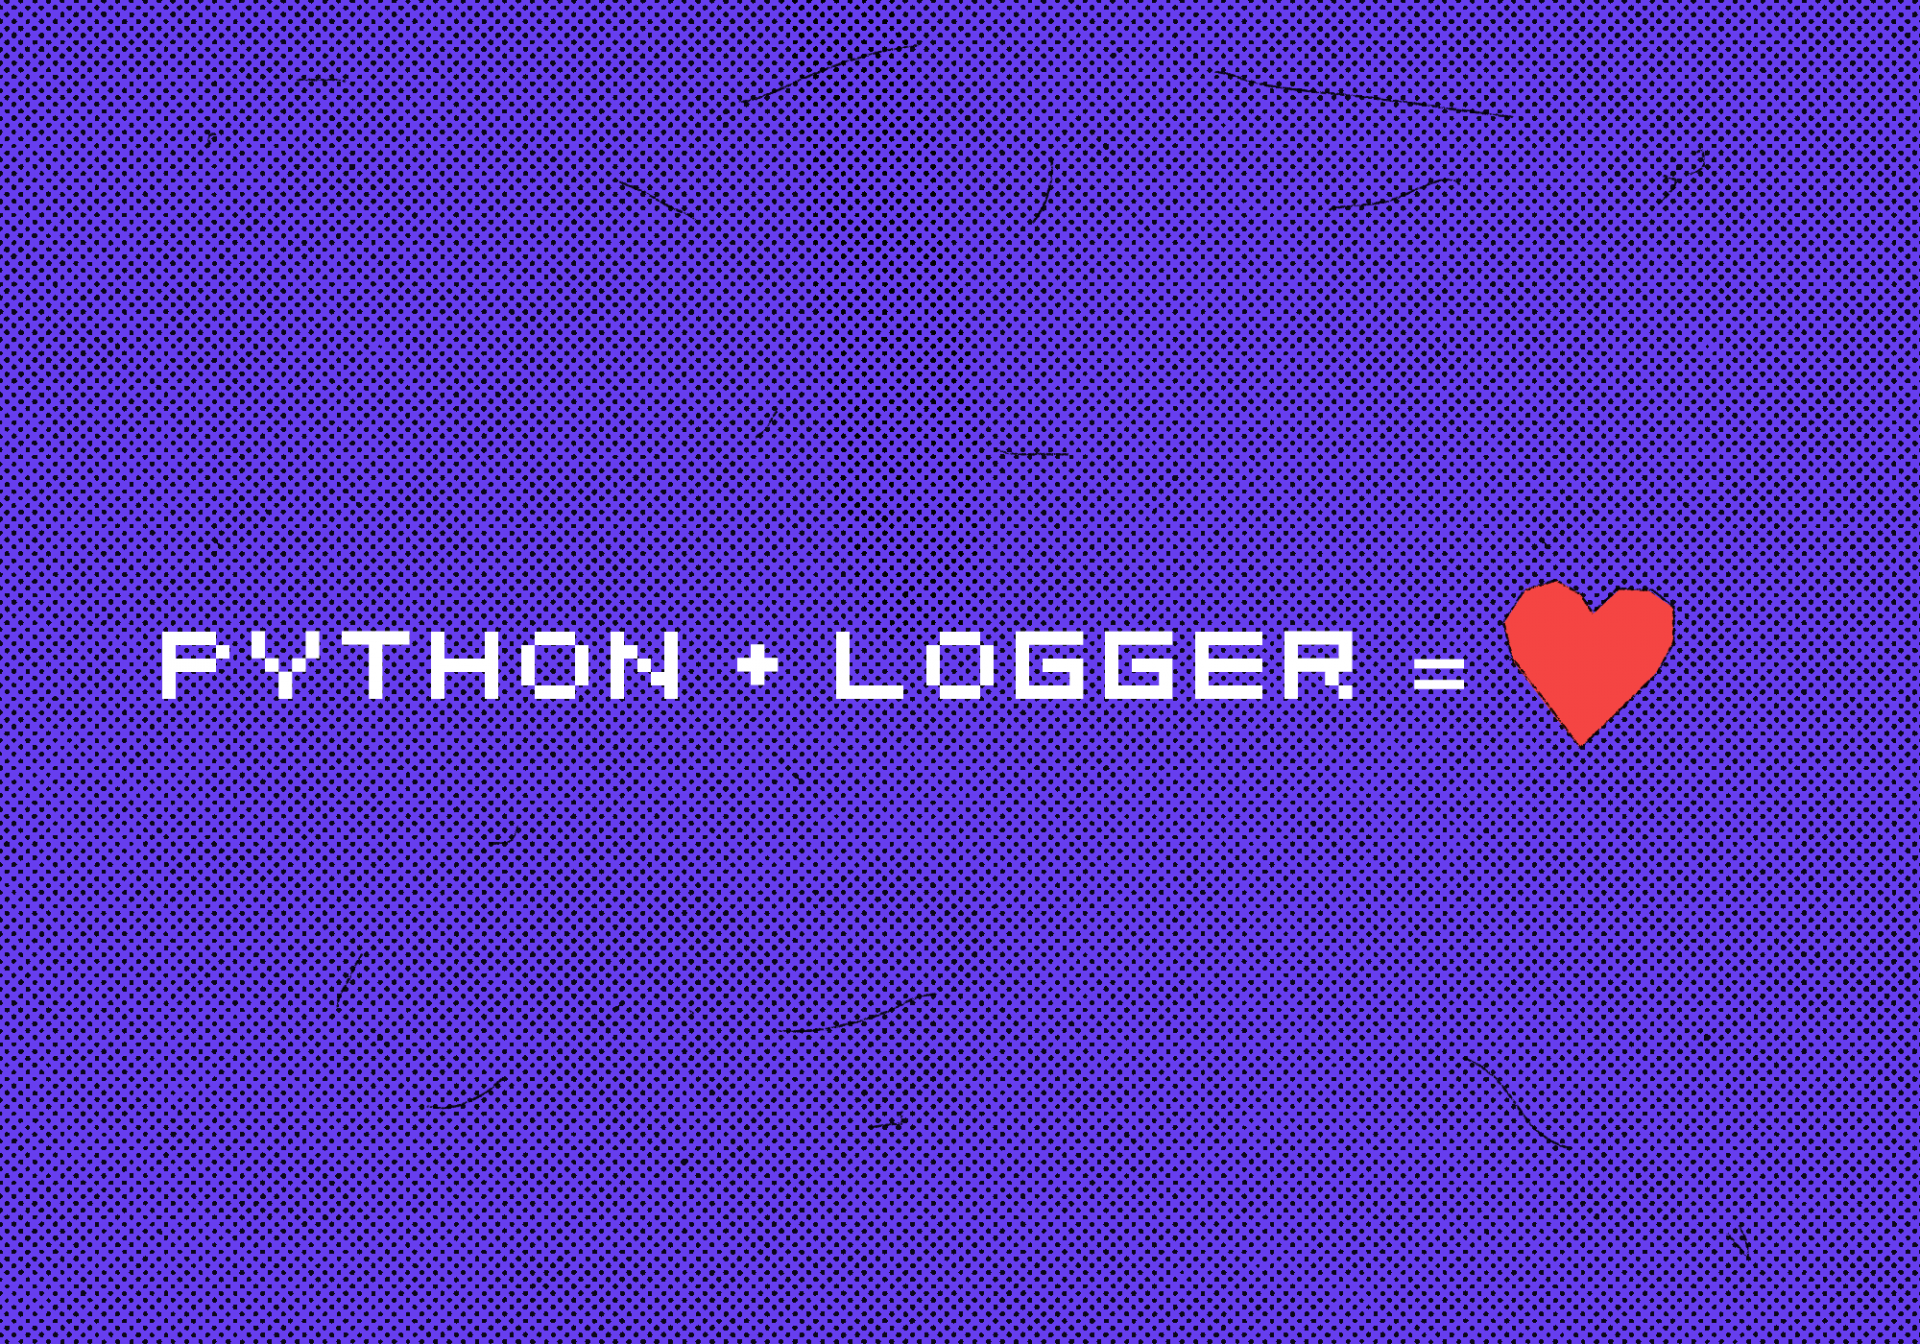 Как быстро добавить логгер в проект на Python